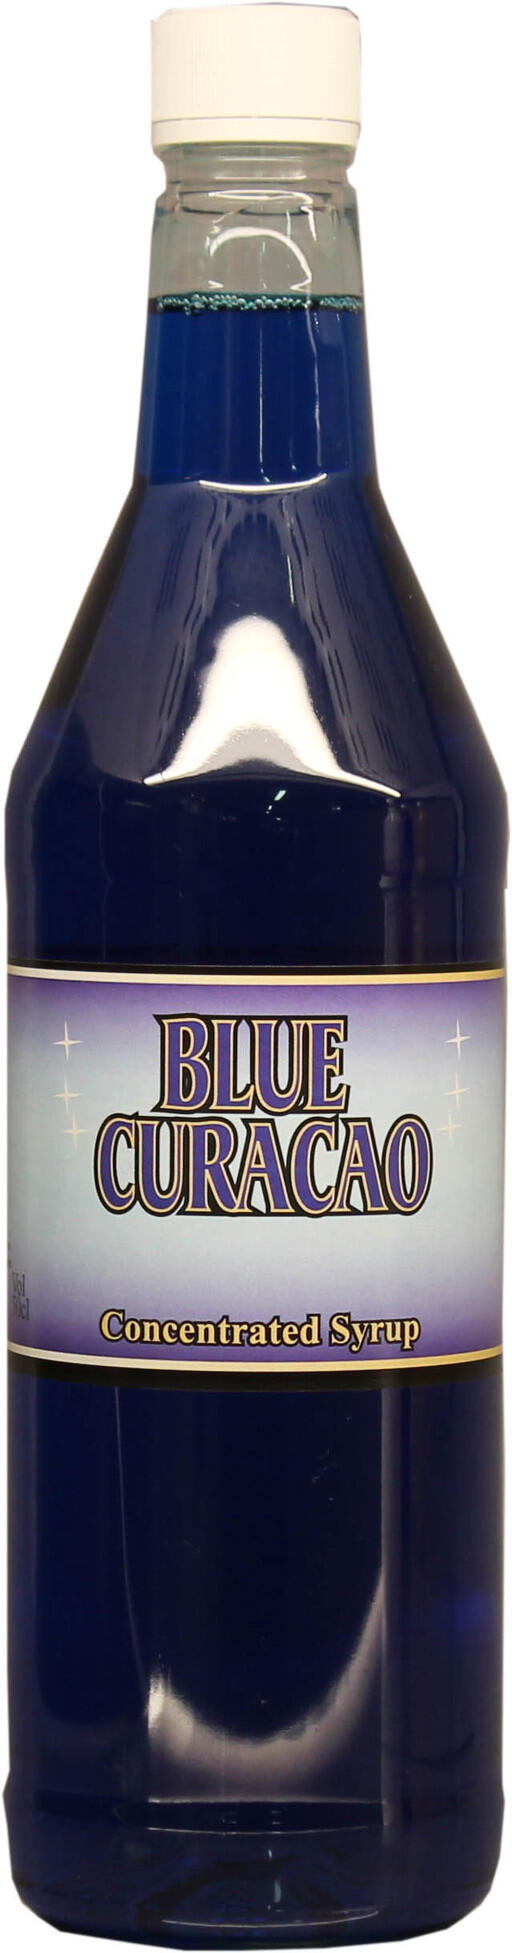 Ge drinkarna en blå touch och god smak med Blue Curacao sirap (syrup).